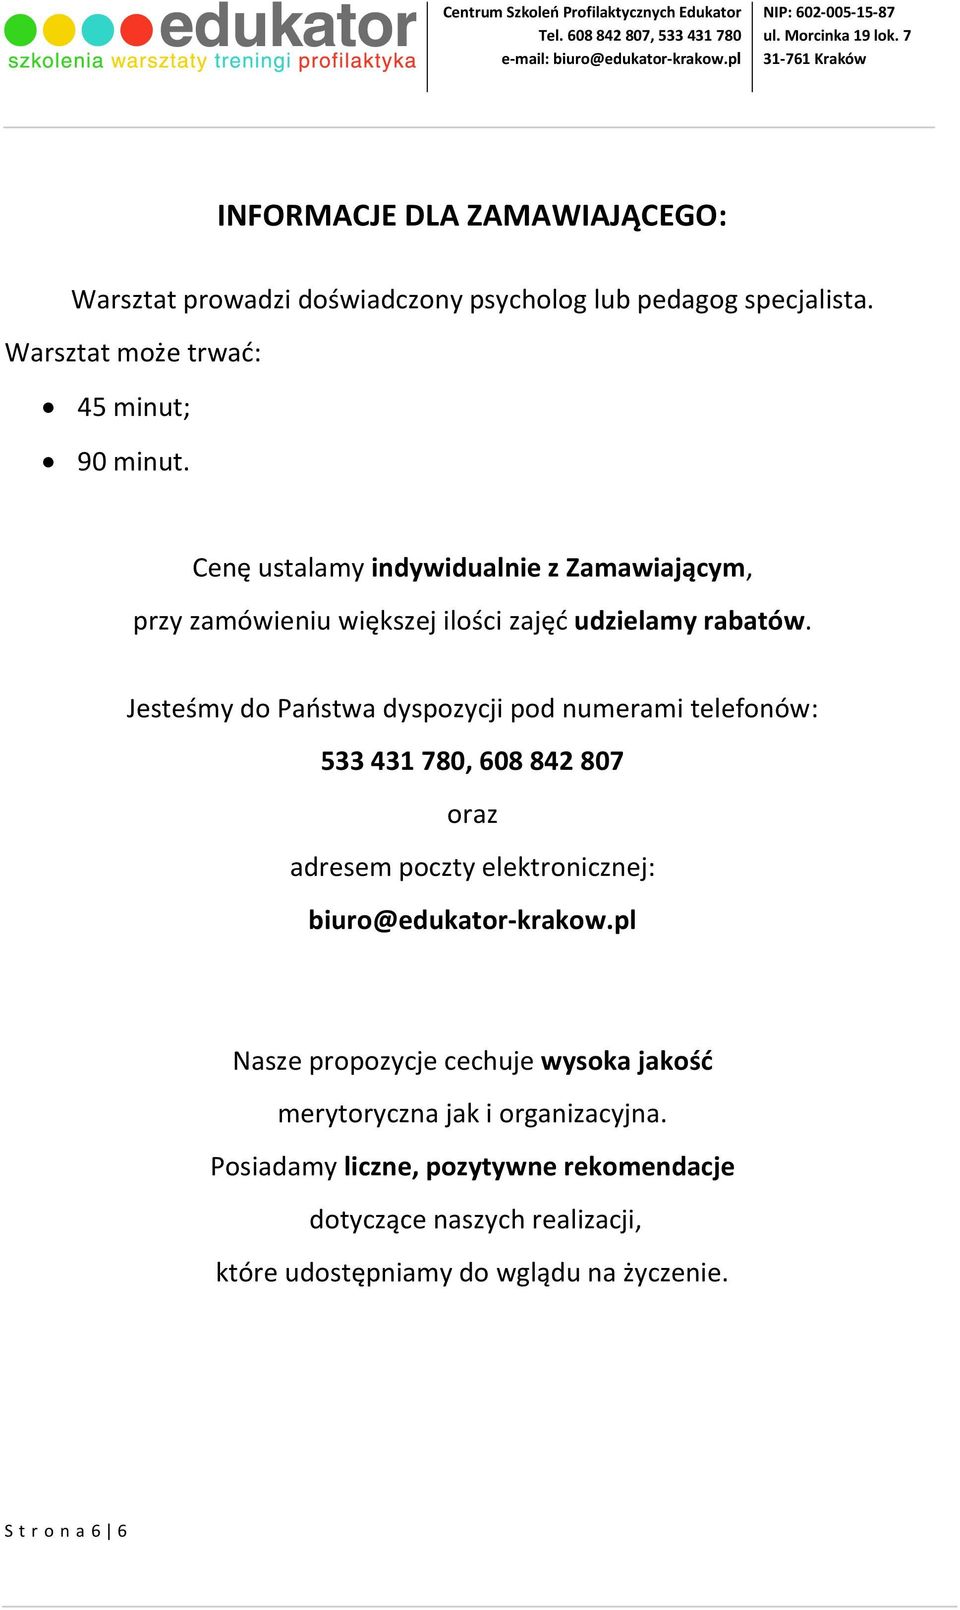 Jesteśmy do Państwa dyspozycji pod numerami telefonów: 533 431 780, 608 842 807 oraz adresem poczty elektronicznej: biuro@edukator-krakow.